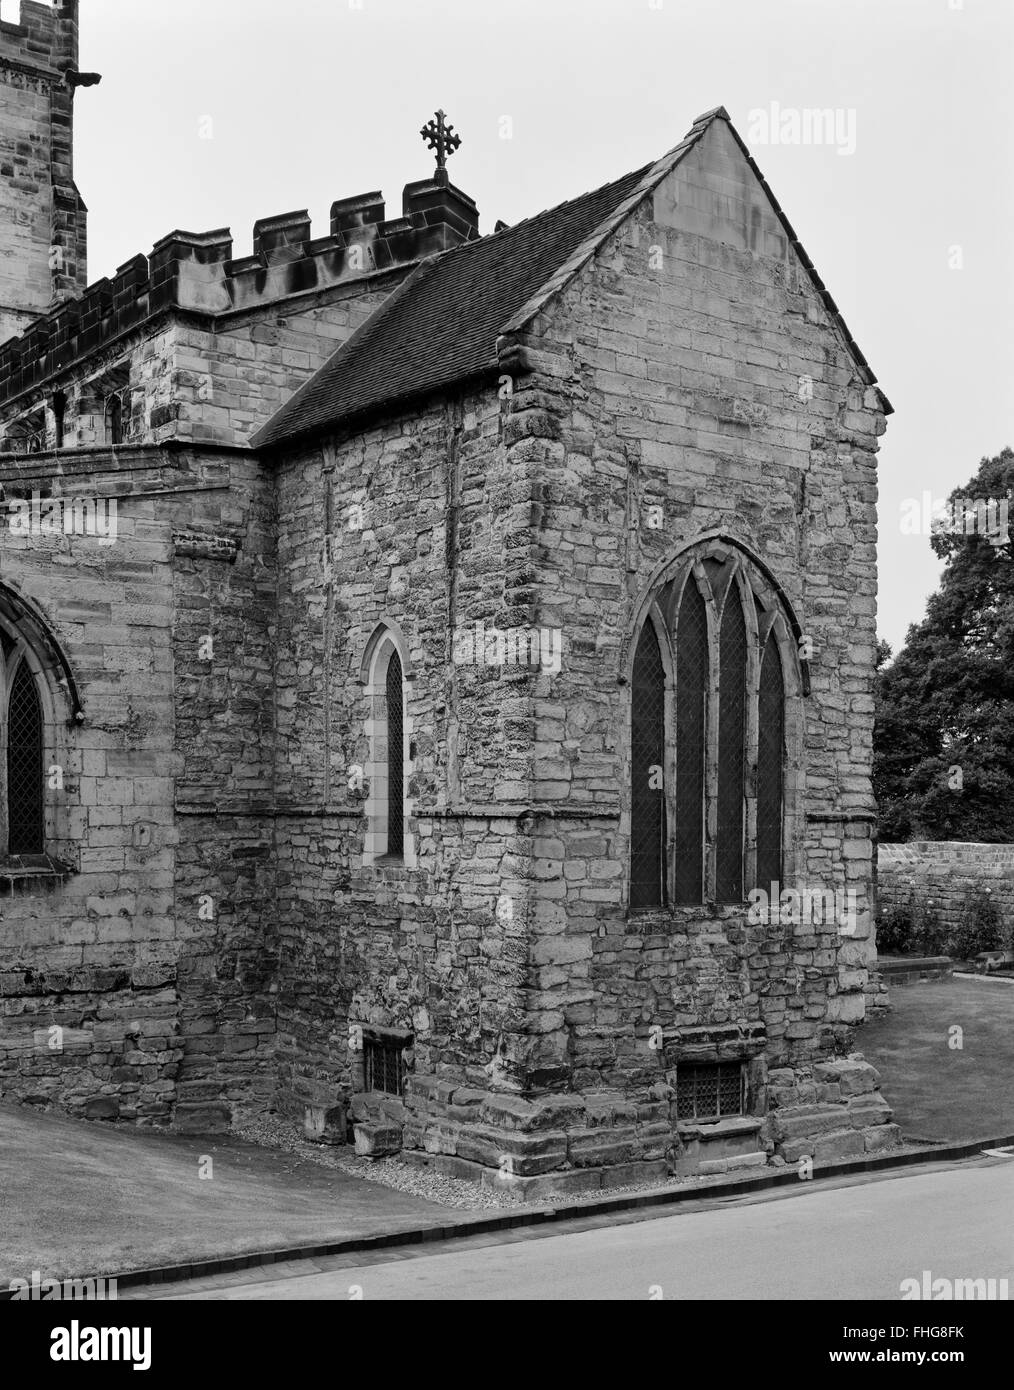 À ONO à chancel anglo-saxonne et crypte de l'église St Wystan, Repton, Derbyshire : crypte a été utilisé comme un mausolée par Mercian famille royale. Banque D'Images